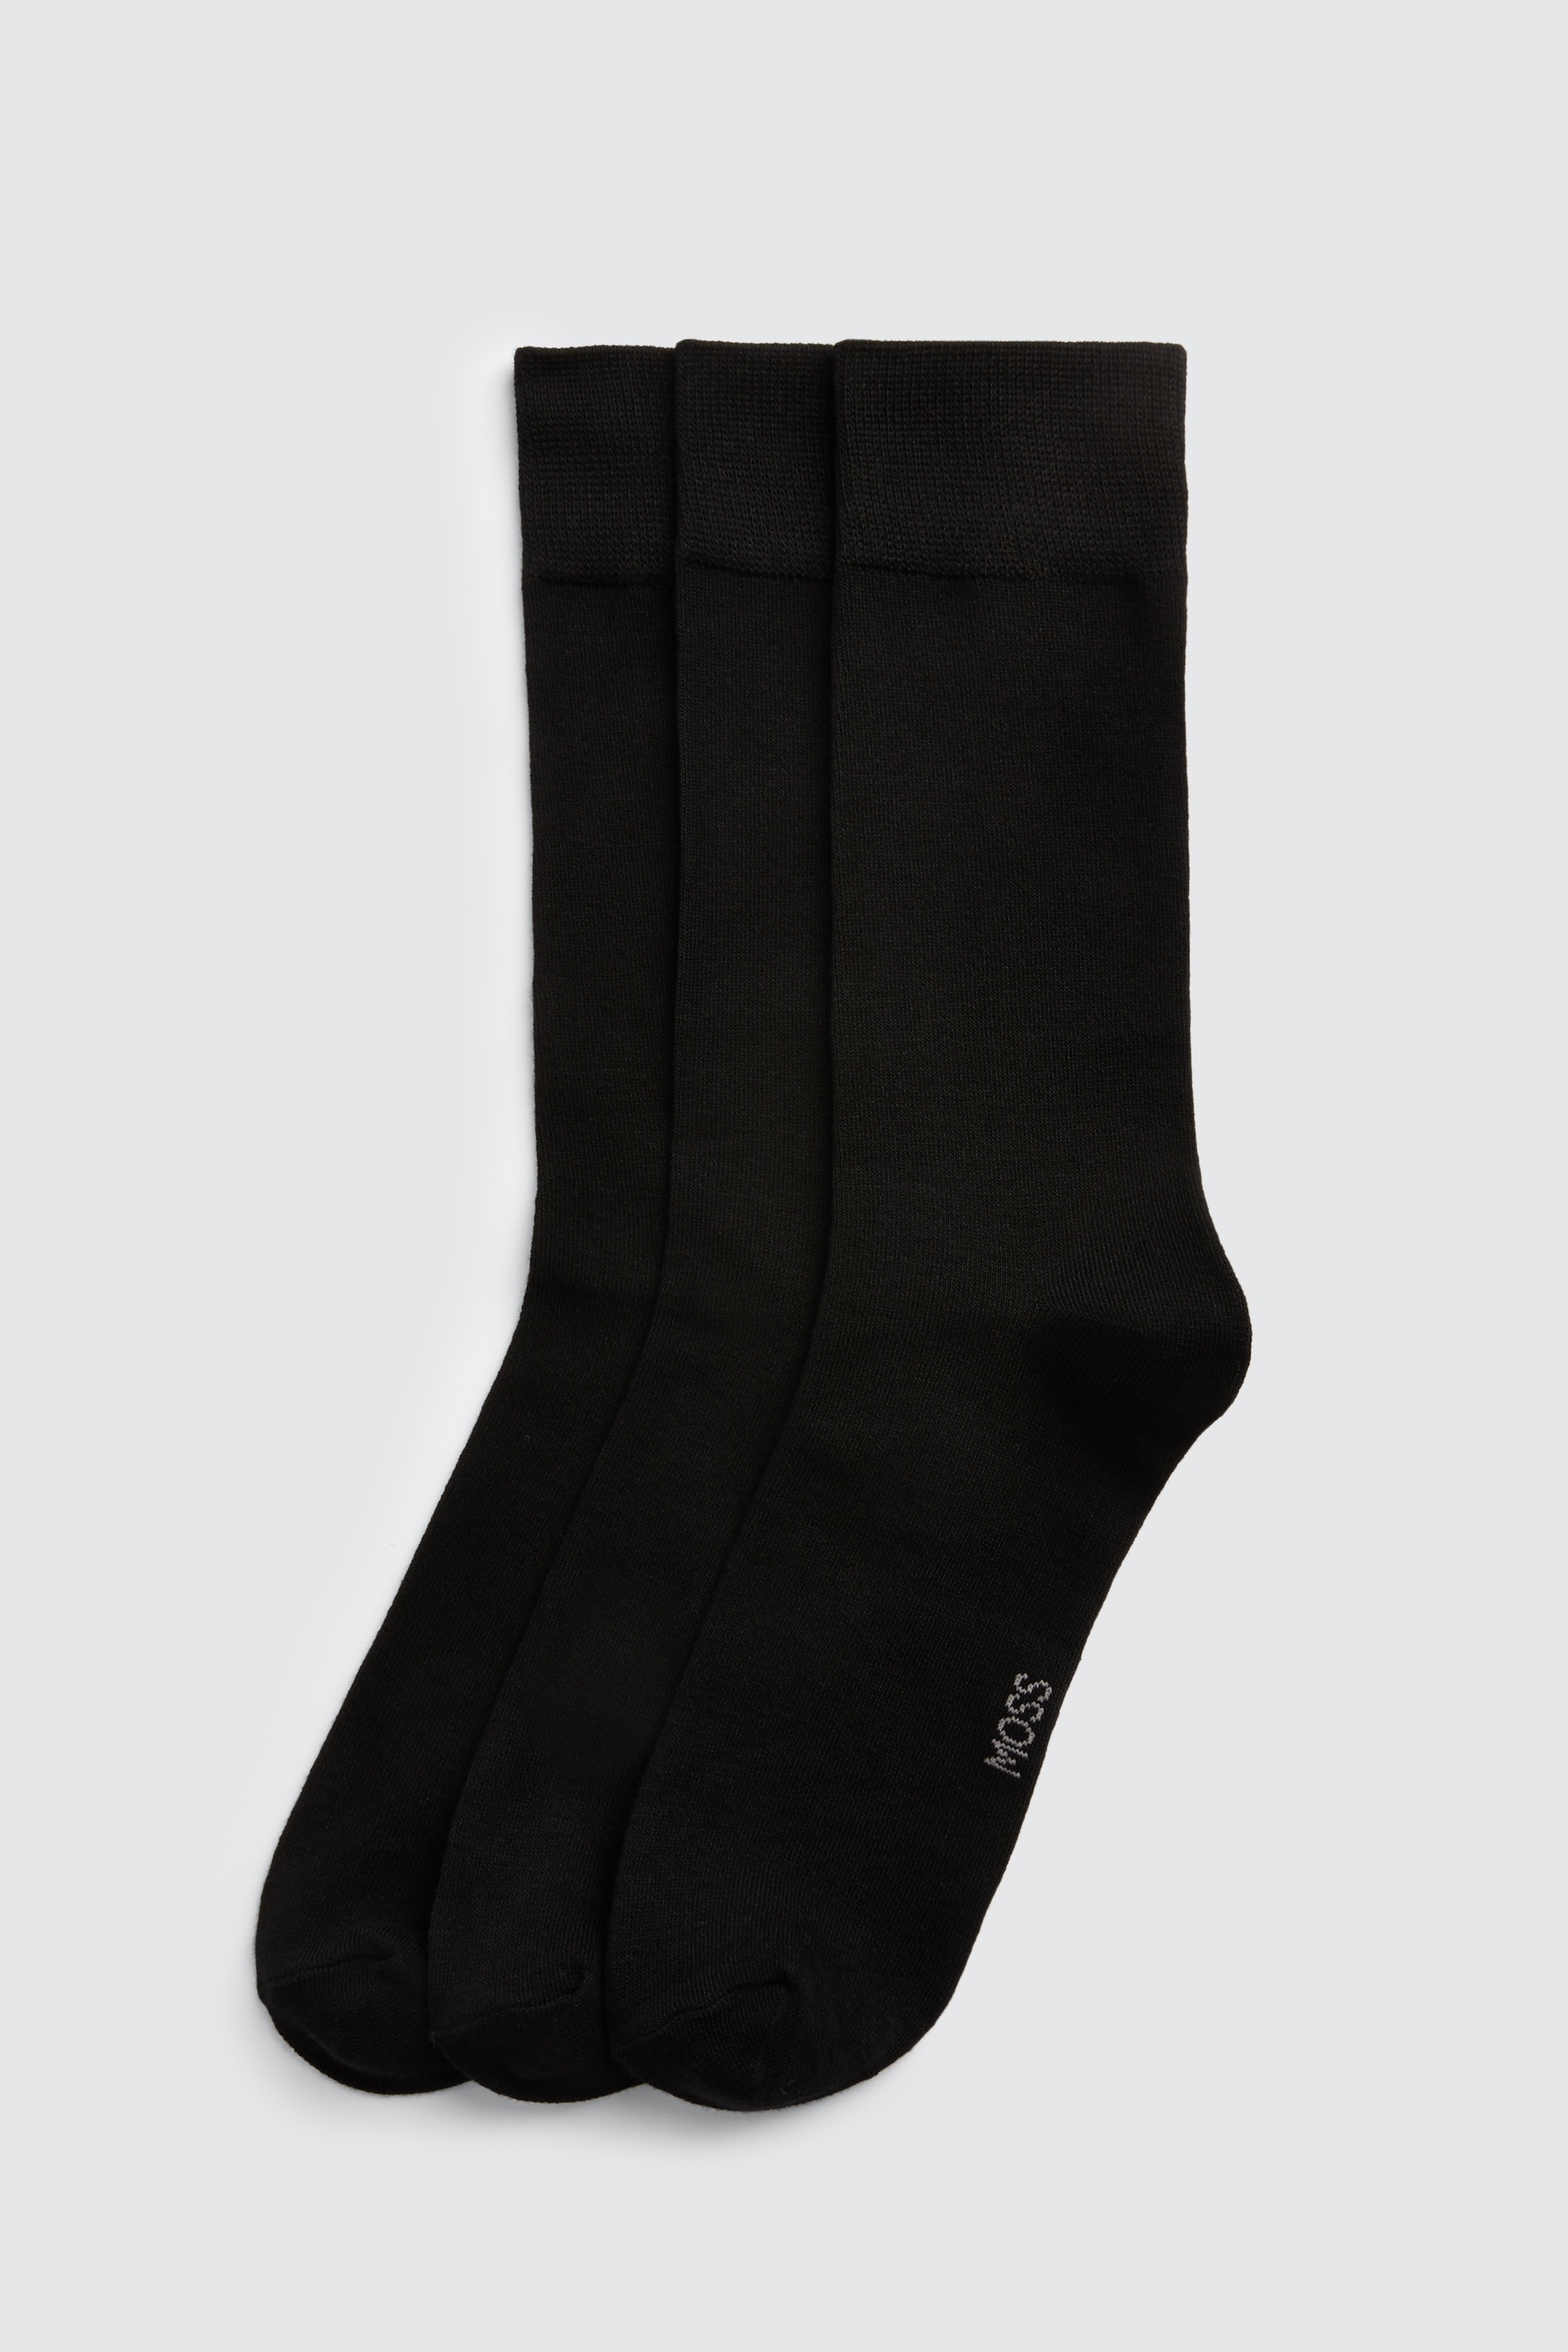 Black 3-Pack Bamboo Socks | Buy Online at Moss